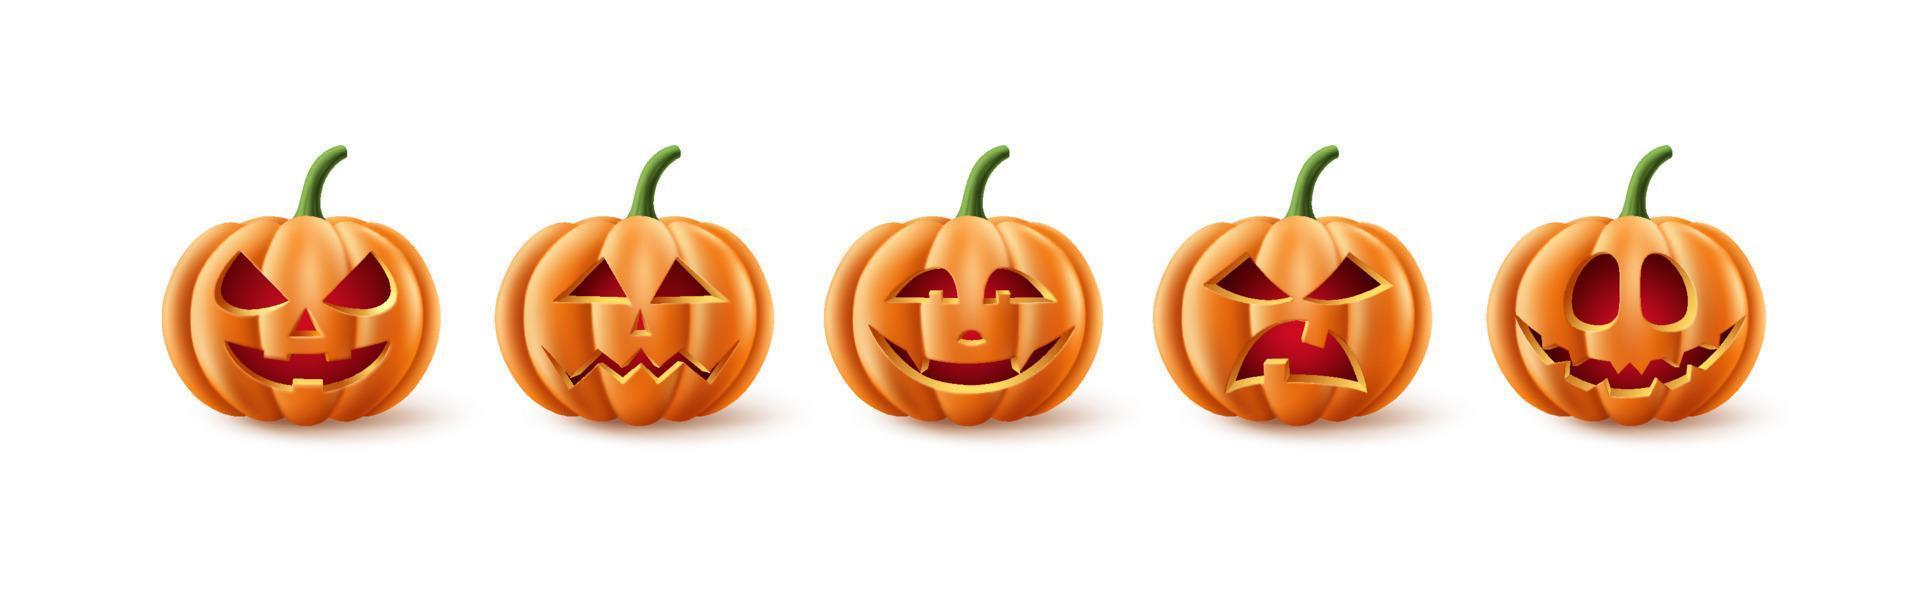 conjunto de vetores de abóboras de halloween. coleção de elementos de abóbora de halloween em assustador, assustador e assustador com expressões faciais para ícones e decorações isoladas no fundo branco. ilustração vetorial.